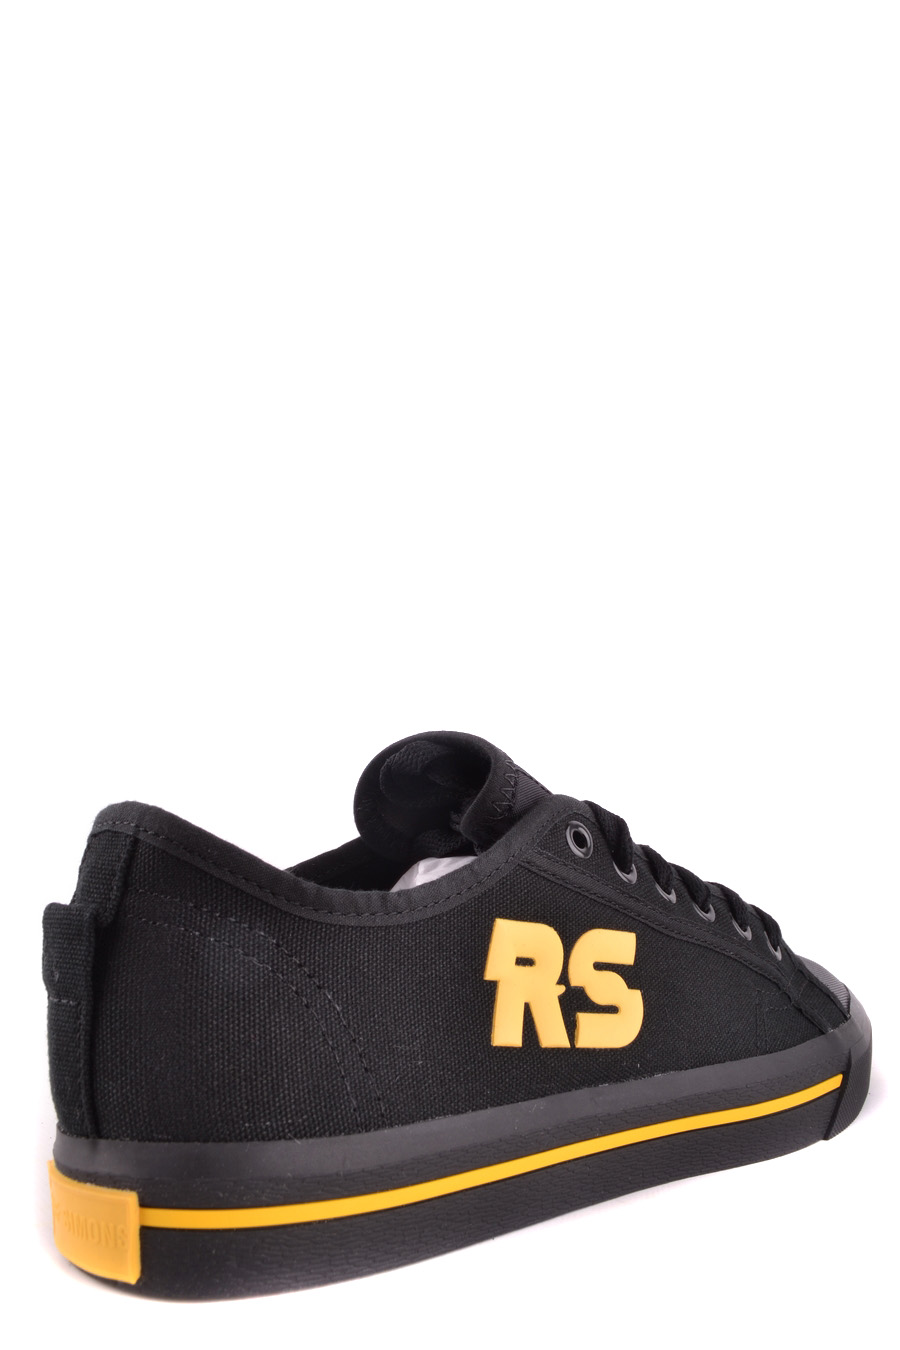 RAF SIMONS Sneakers | ViganoBoutique.com